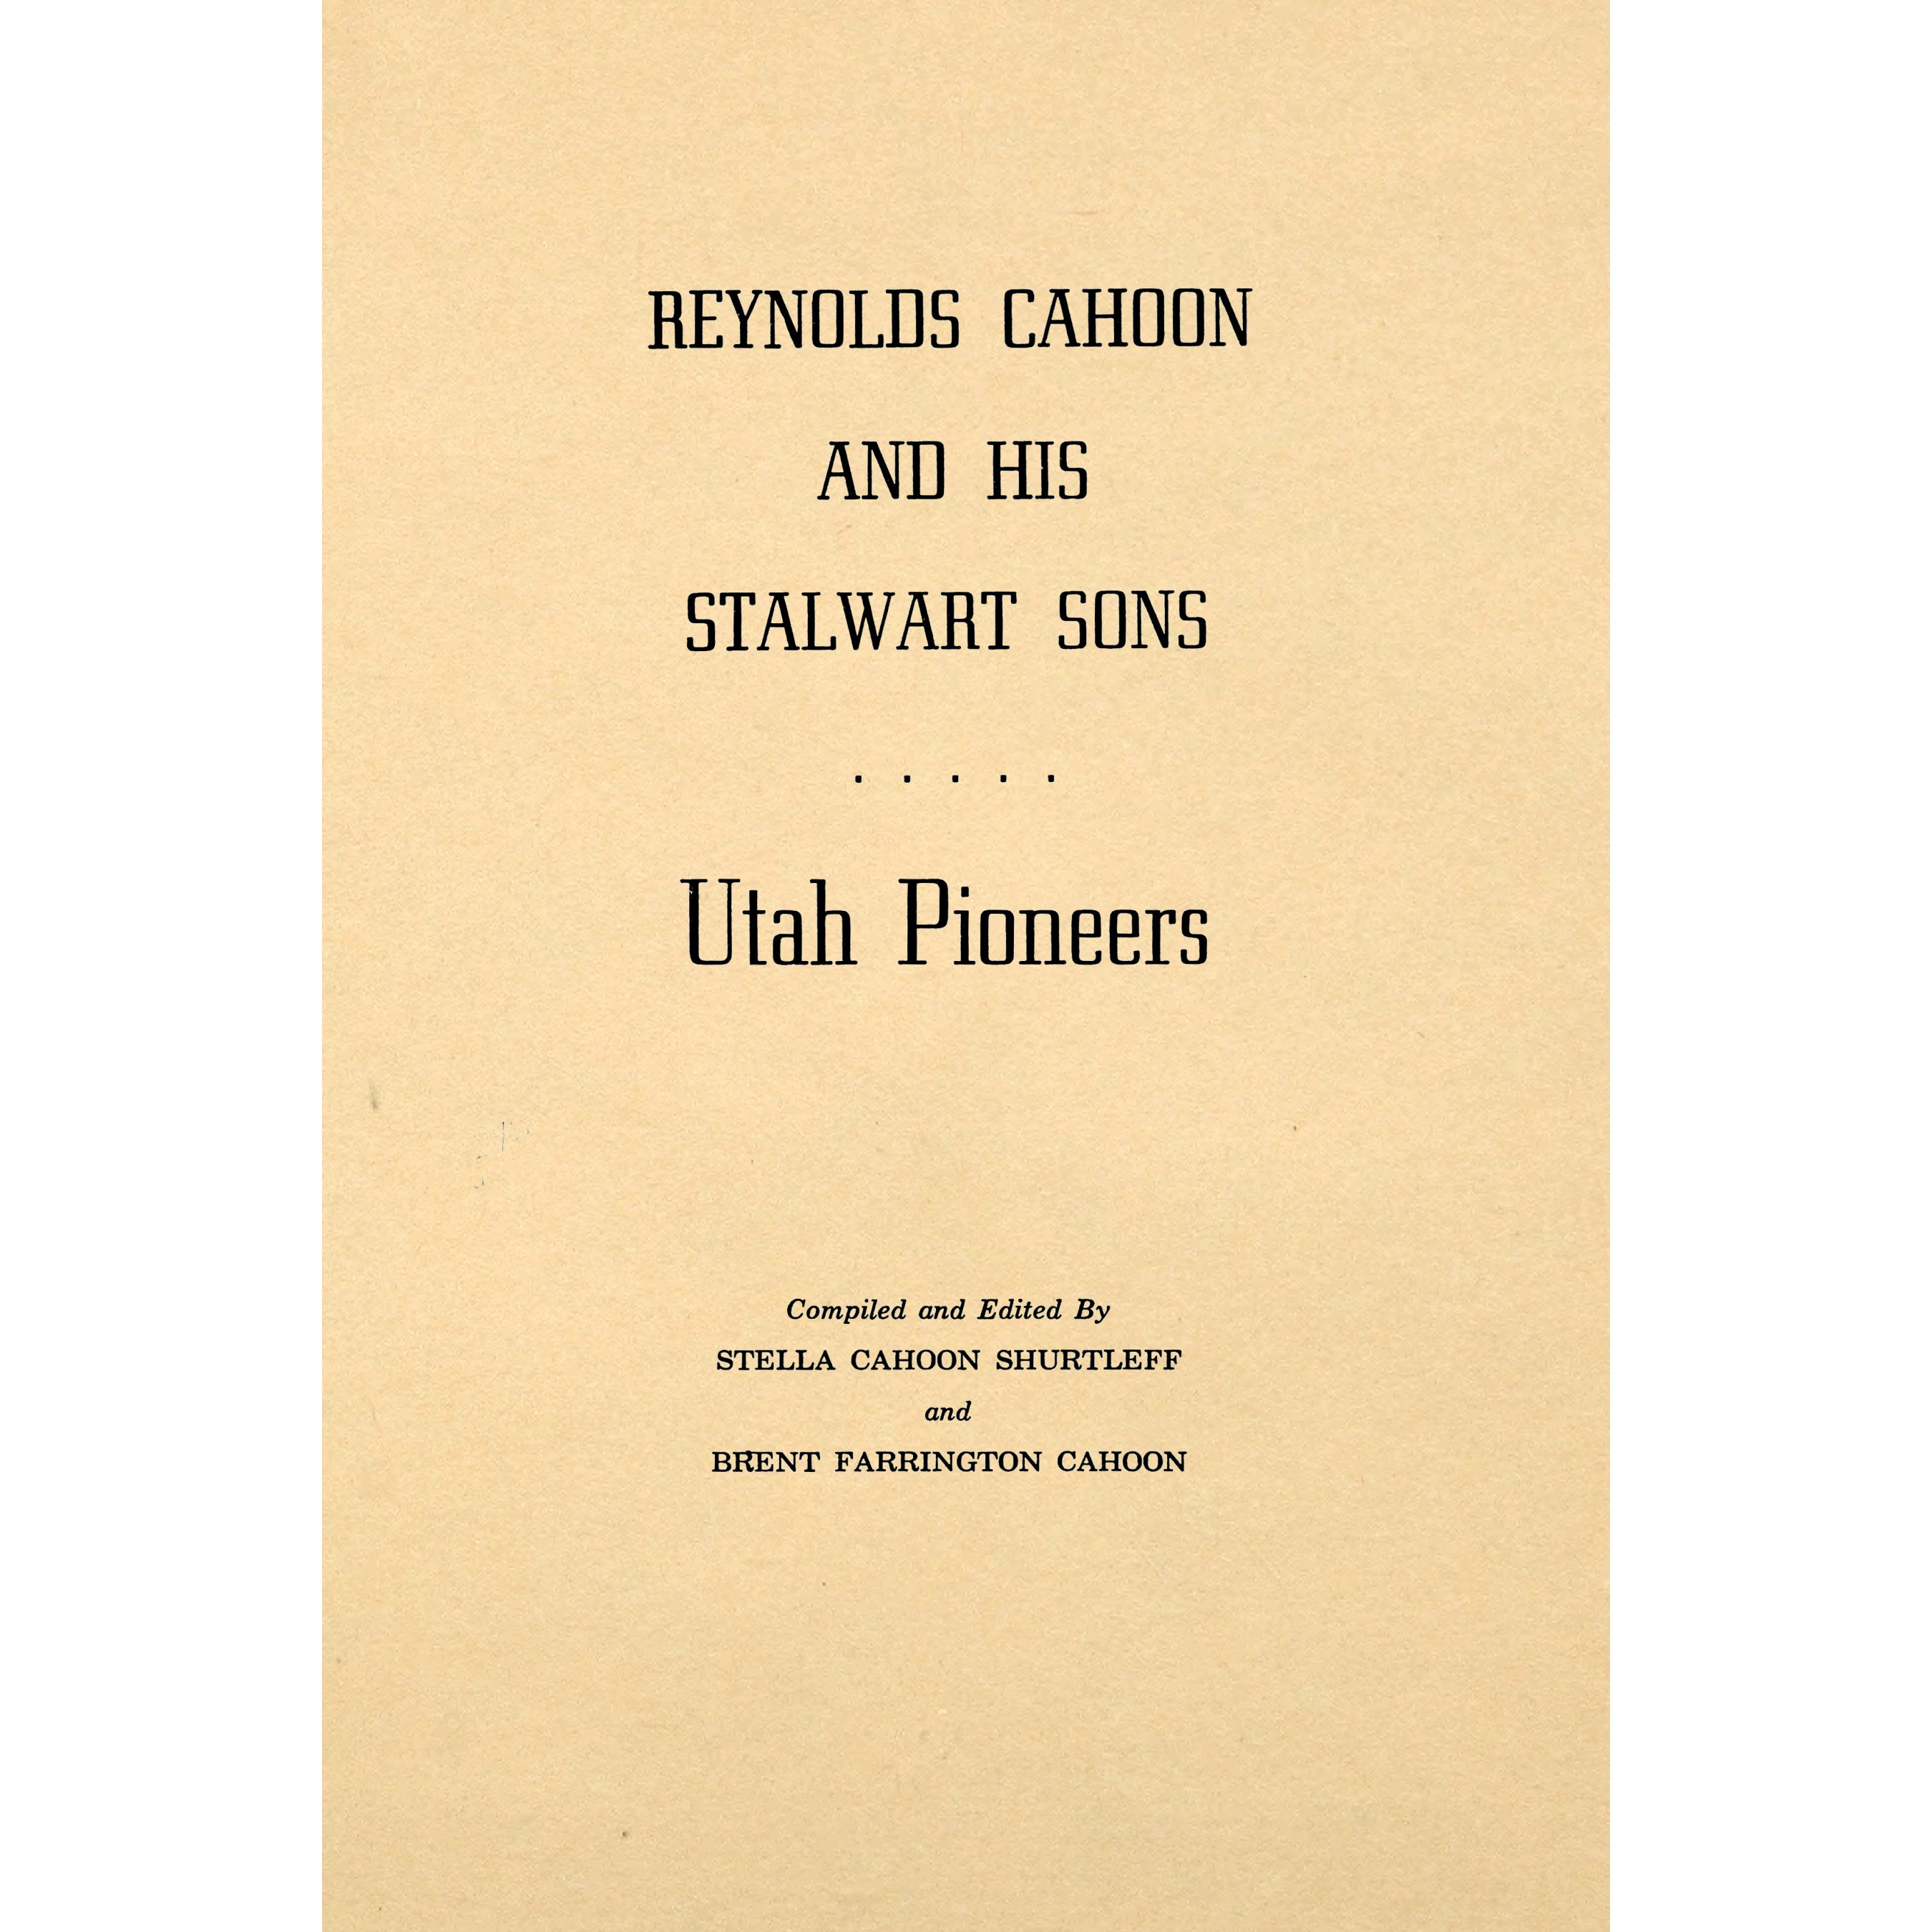 Reynolds Cahoon and his stalwart sons : Utah pioneers